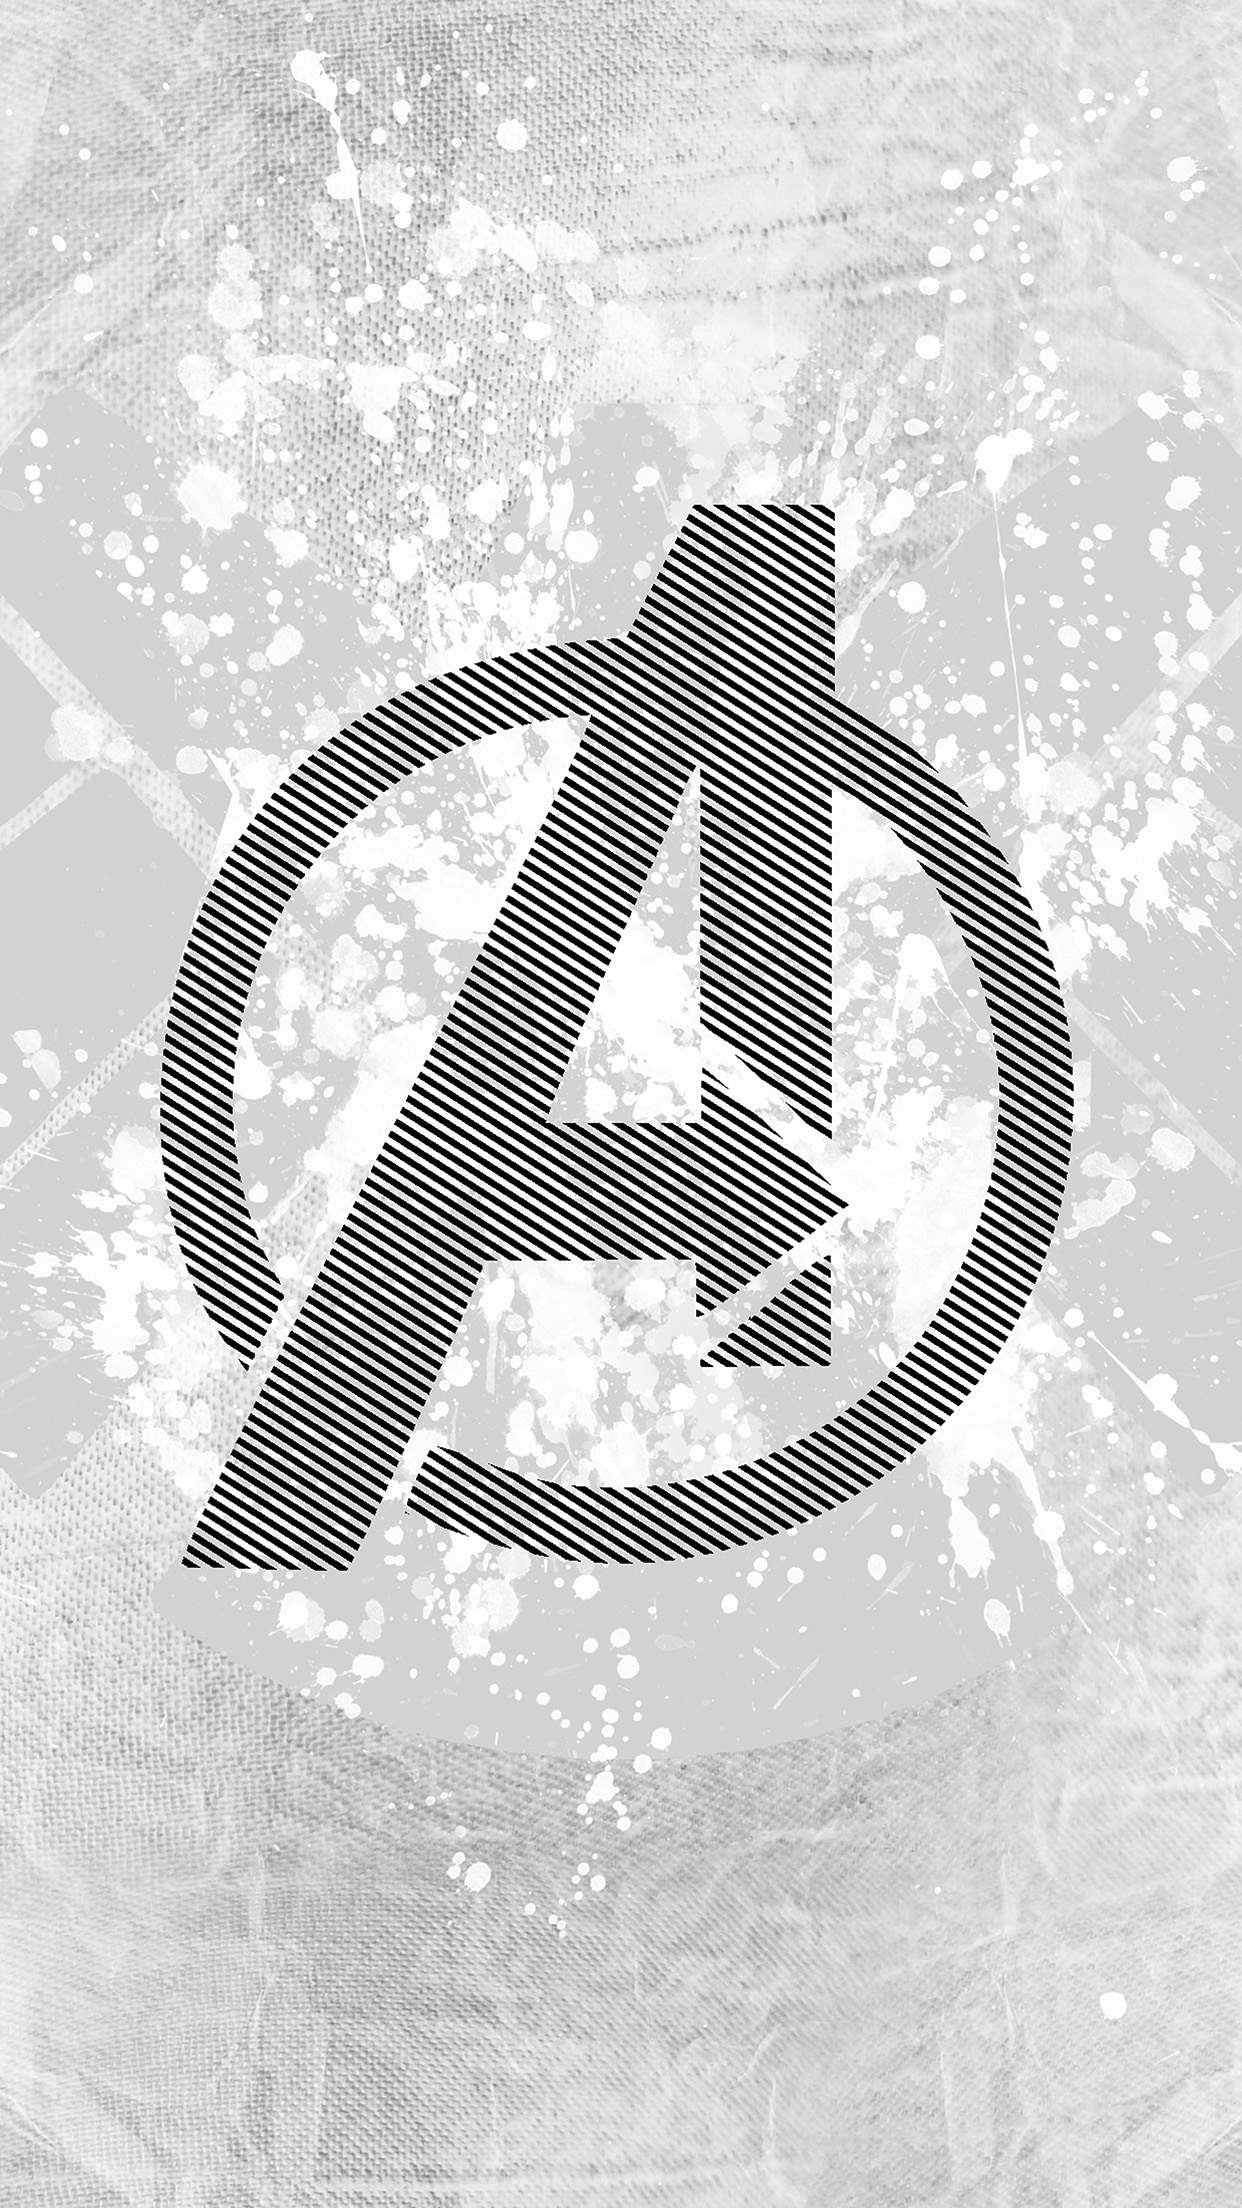 Marvel wallpaper, Avengers wallpaper, Avengers logo